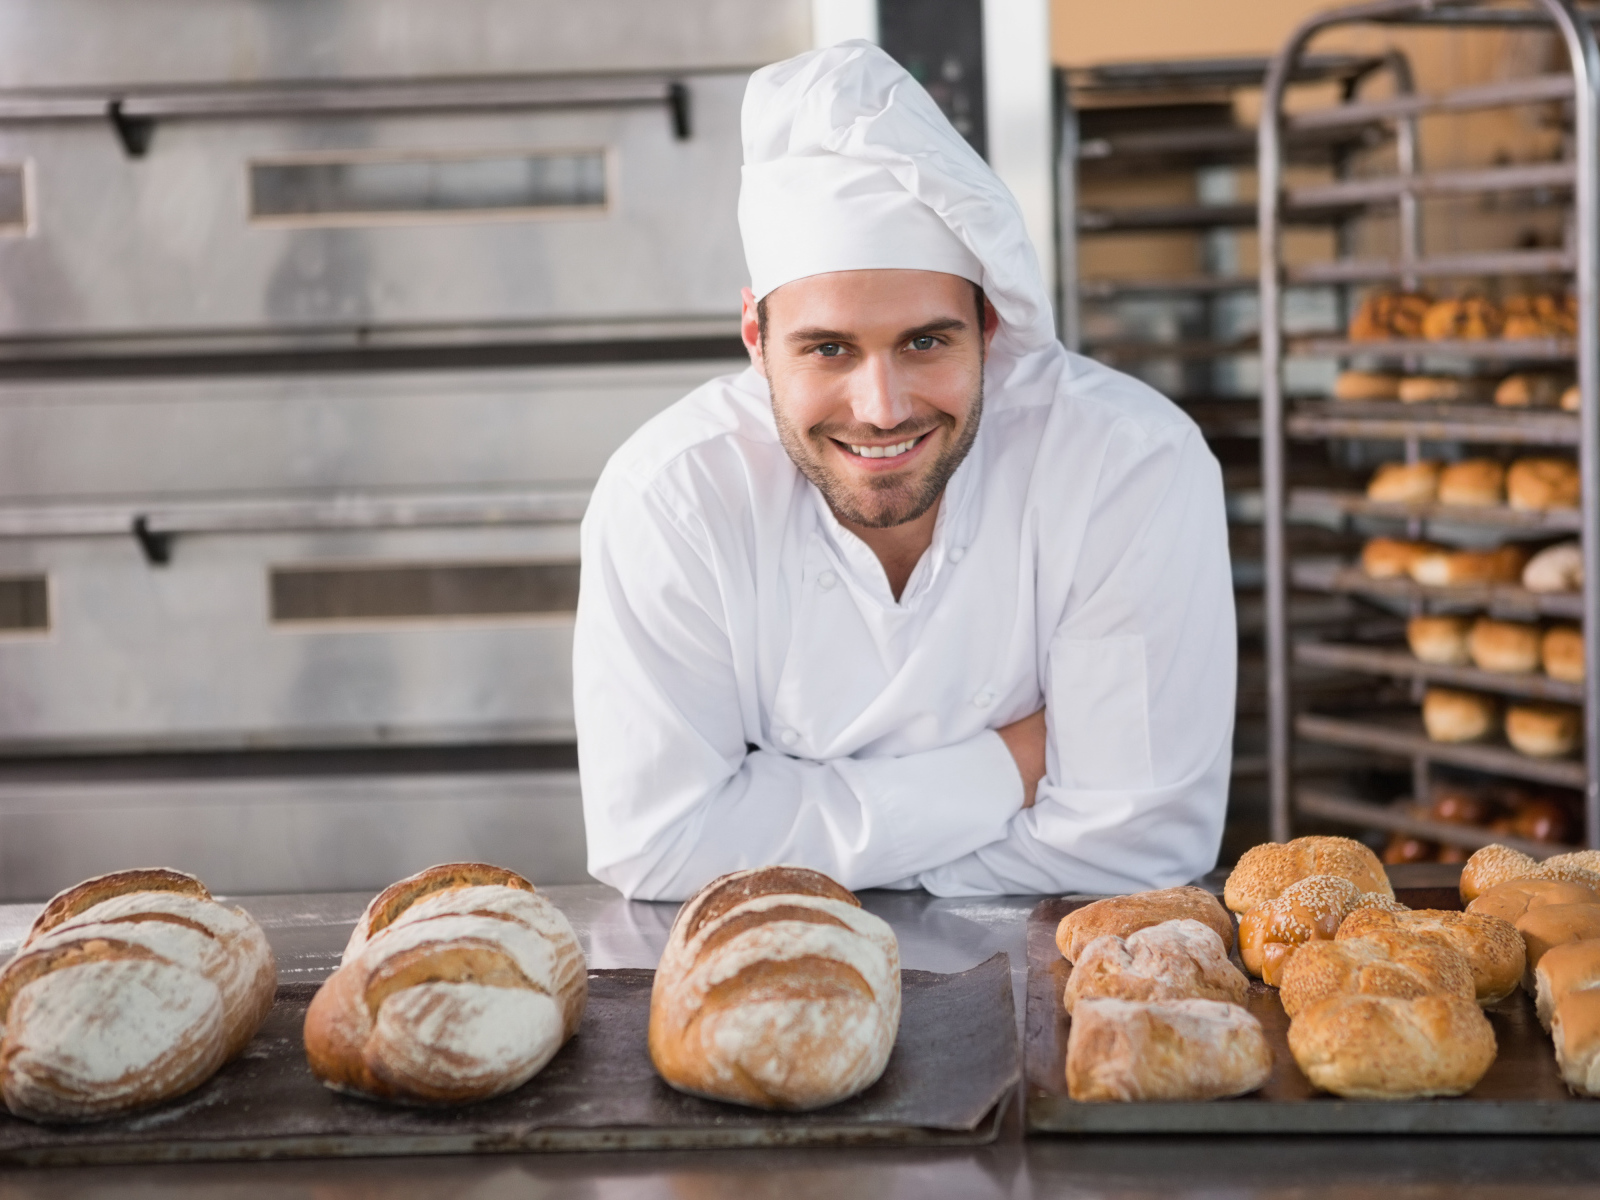 Красивый улыбающийся мужчина пекарь в форме